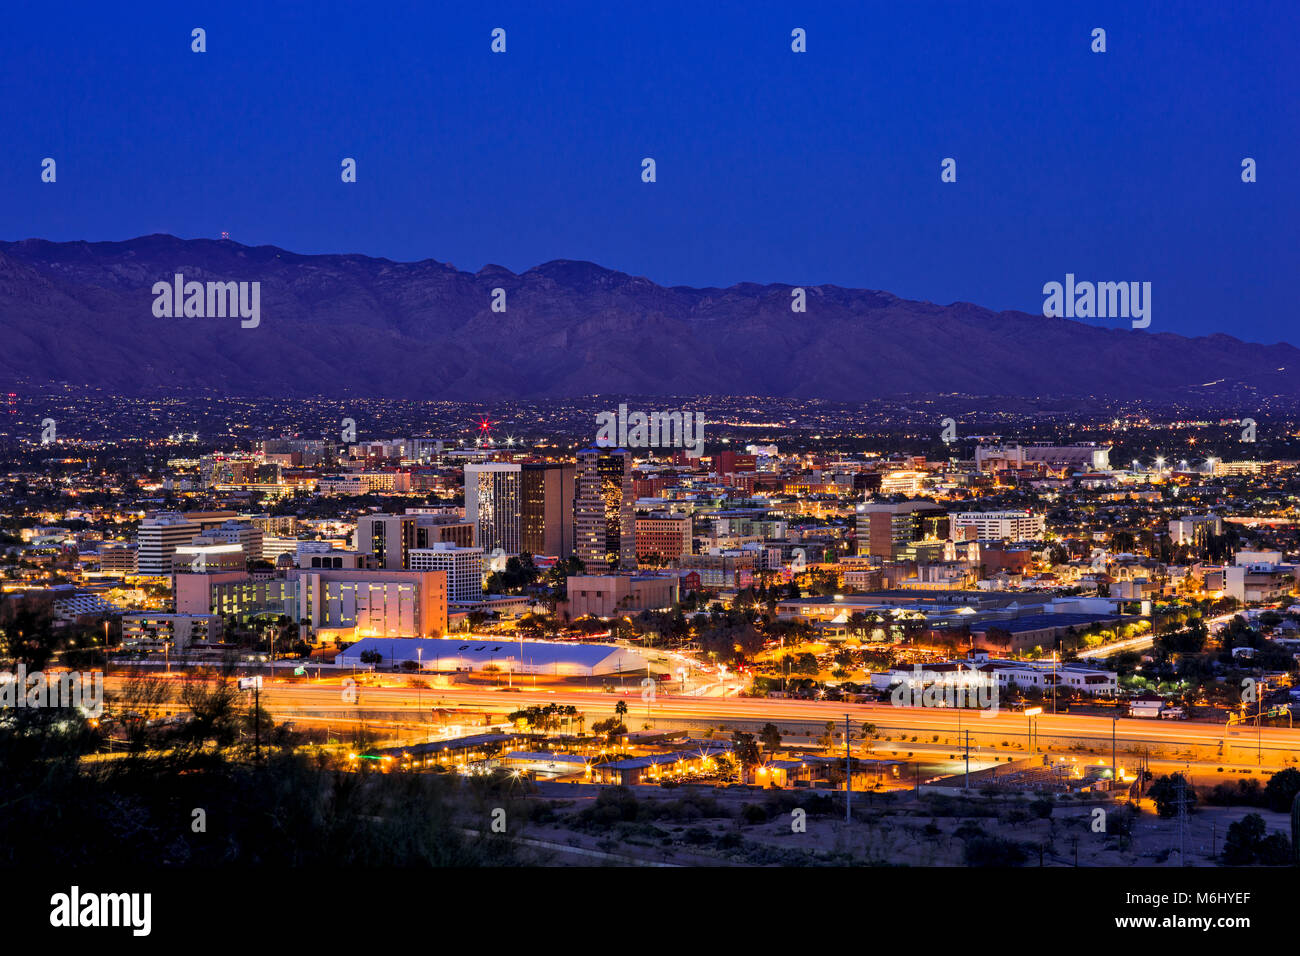 Les montagnes de Santa Catalina au-dessus du centre-ville de Tucson, la ville d'Arizona la nuit Banque D'Images